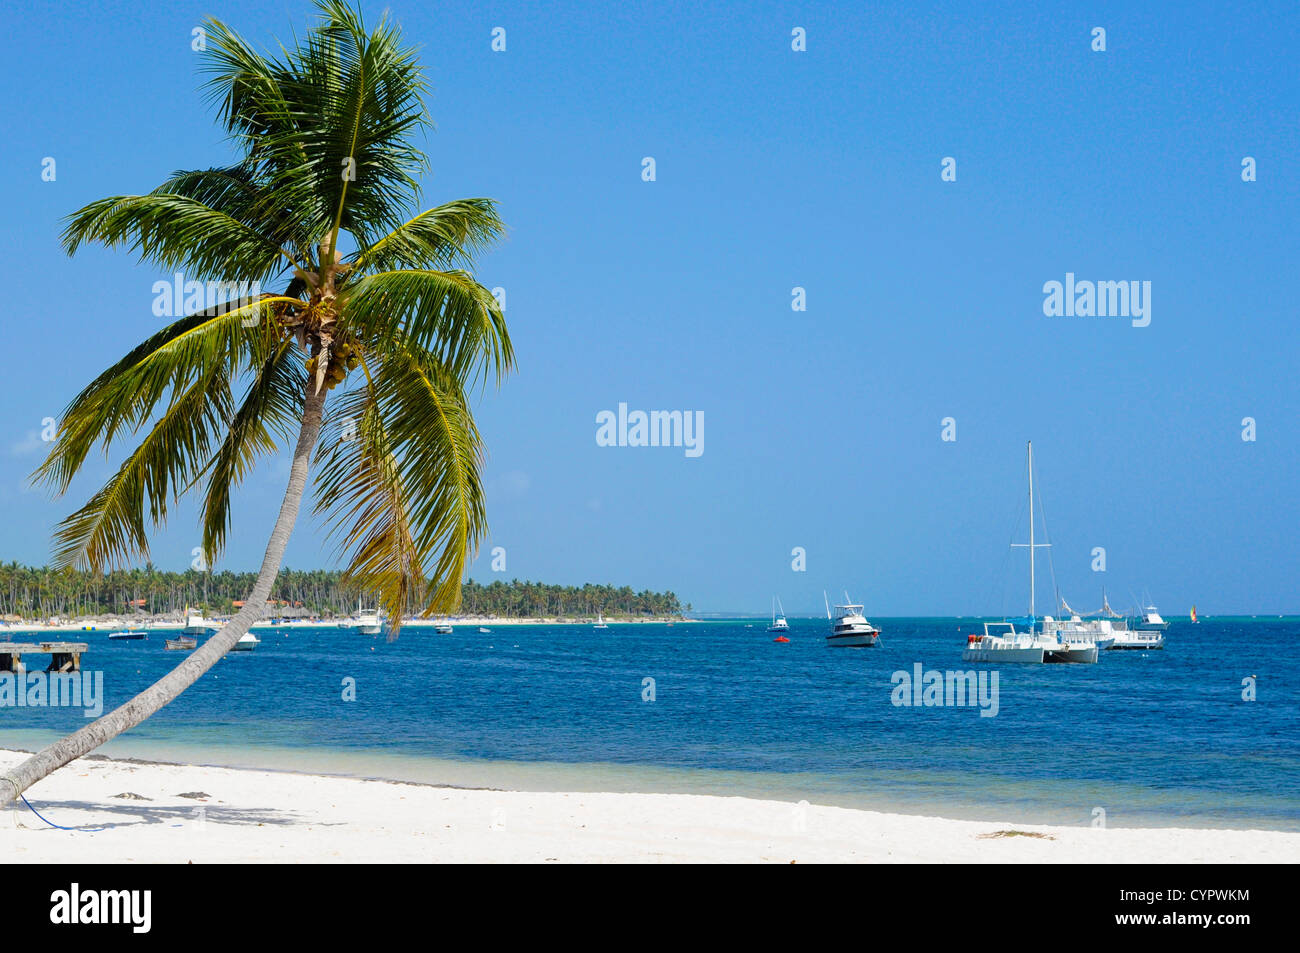 Beau palmier sur une plage avec des bateaux se balançant dans l'océan bleu Banque D'Images